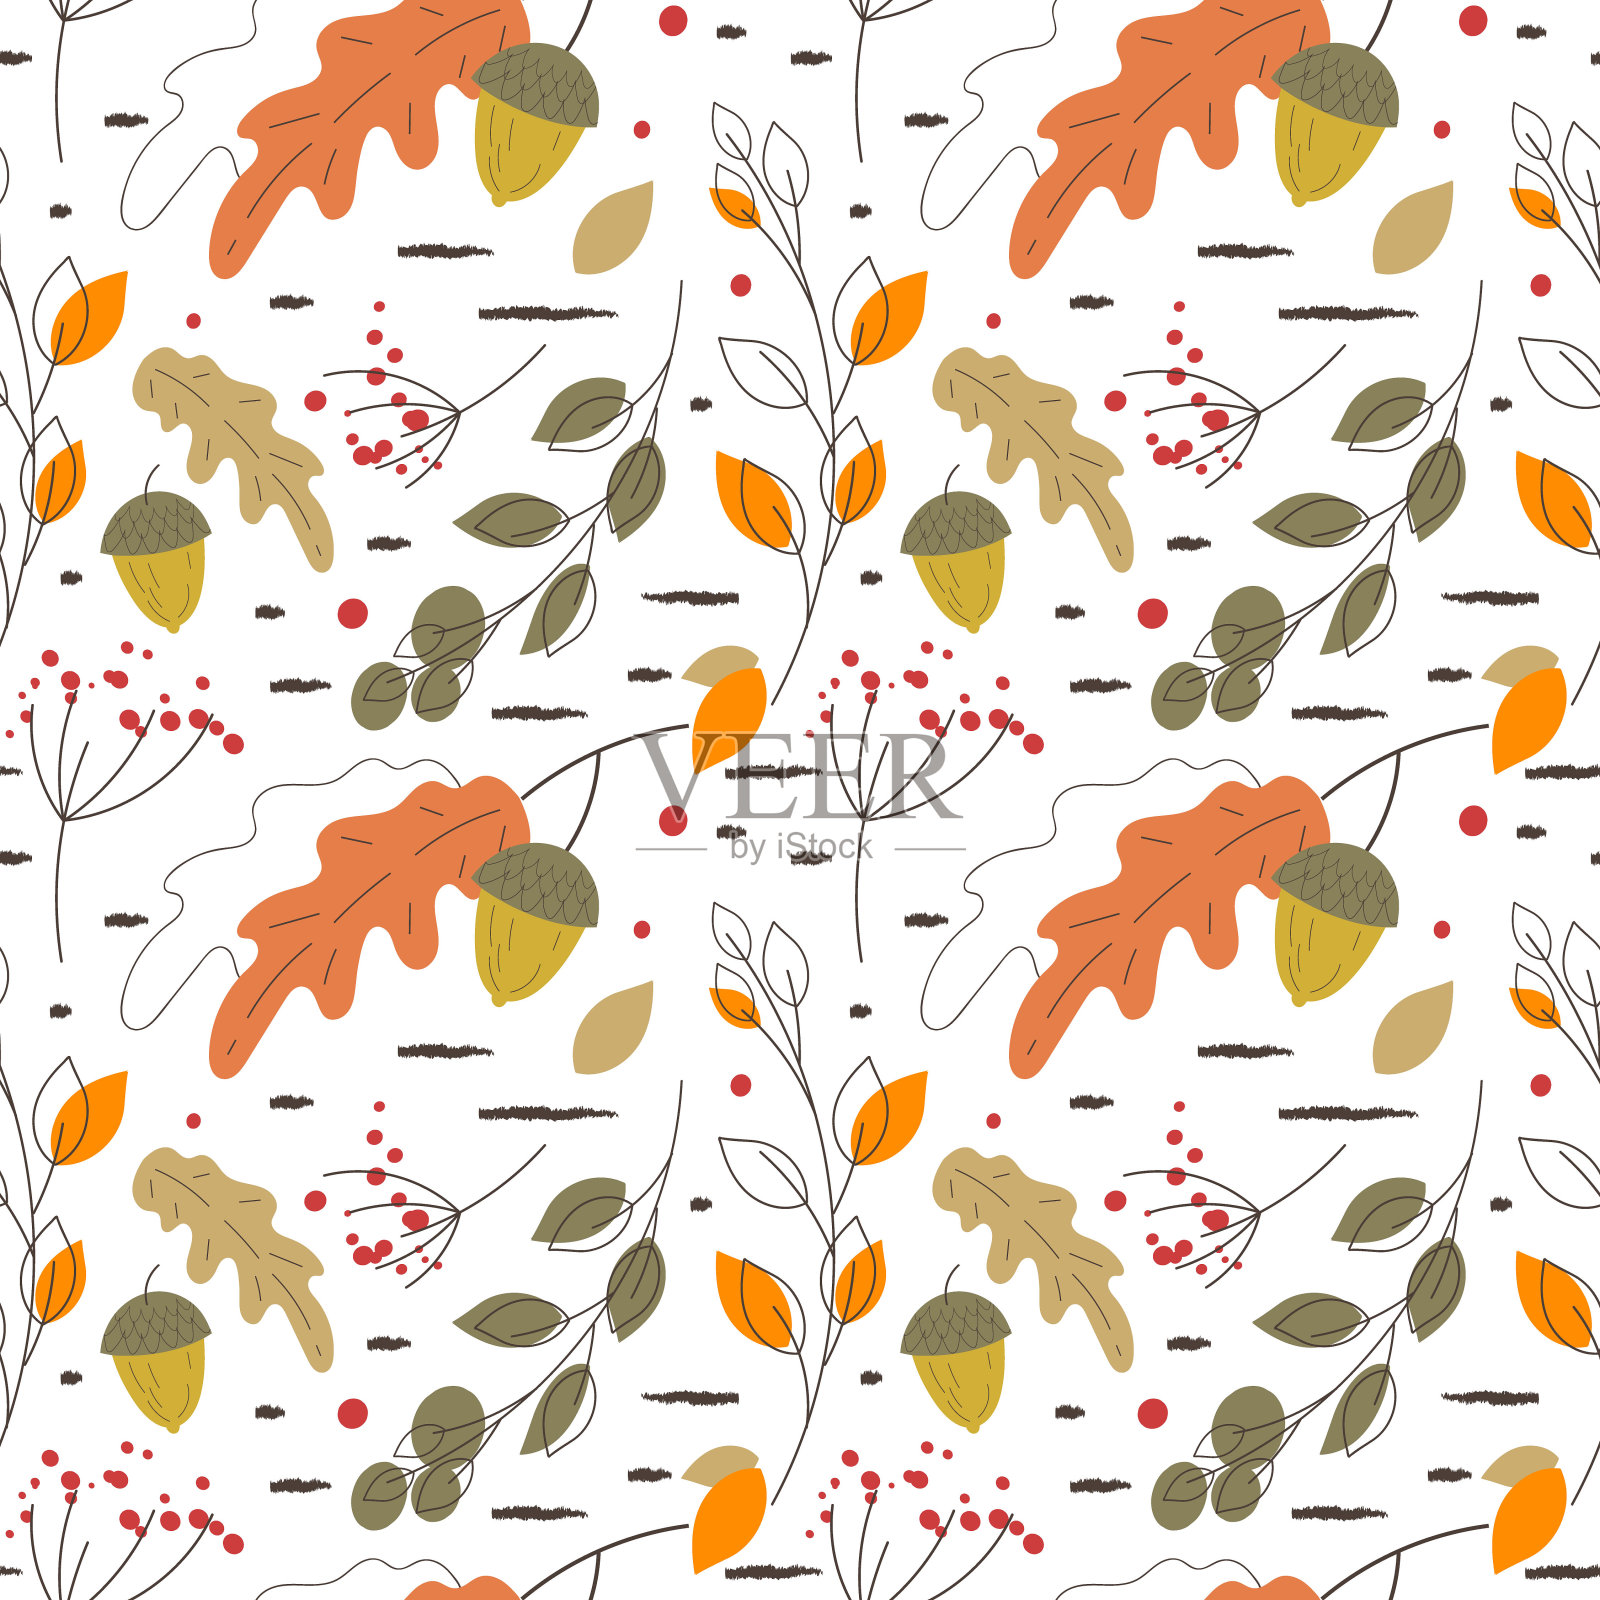 矢量可爱无缝图案，斯堪的纳维亚秋季手绘细线设计。灰色轮廓，白色背景。用于收割的橡树叶、橡子、树枝、浆果插画图片素材